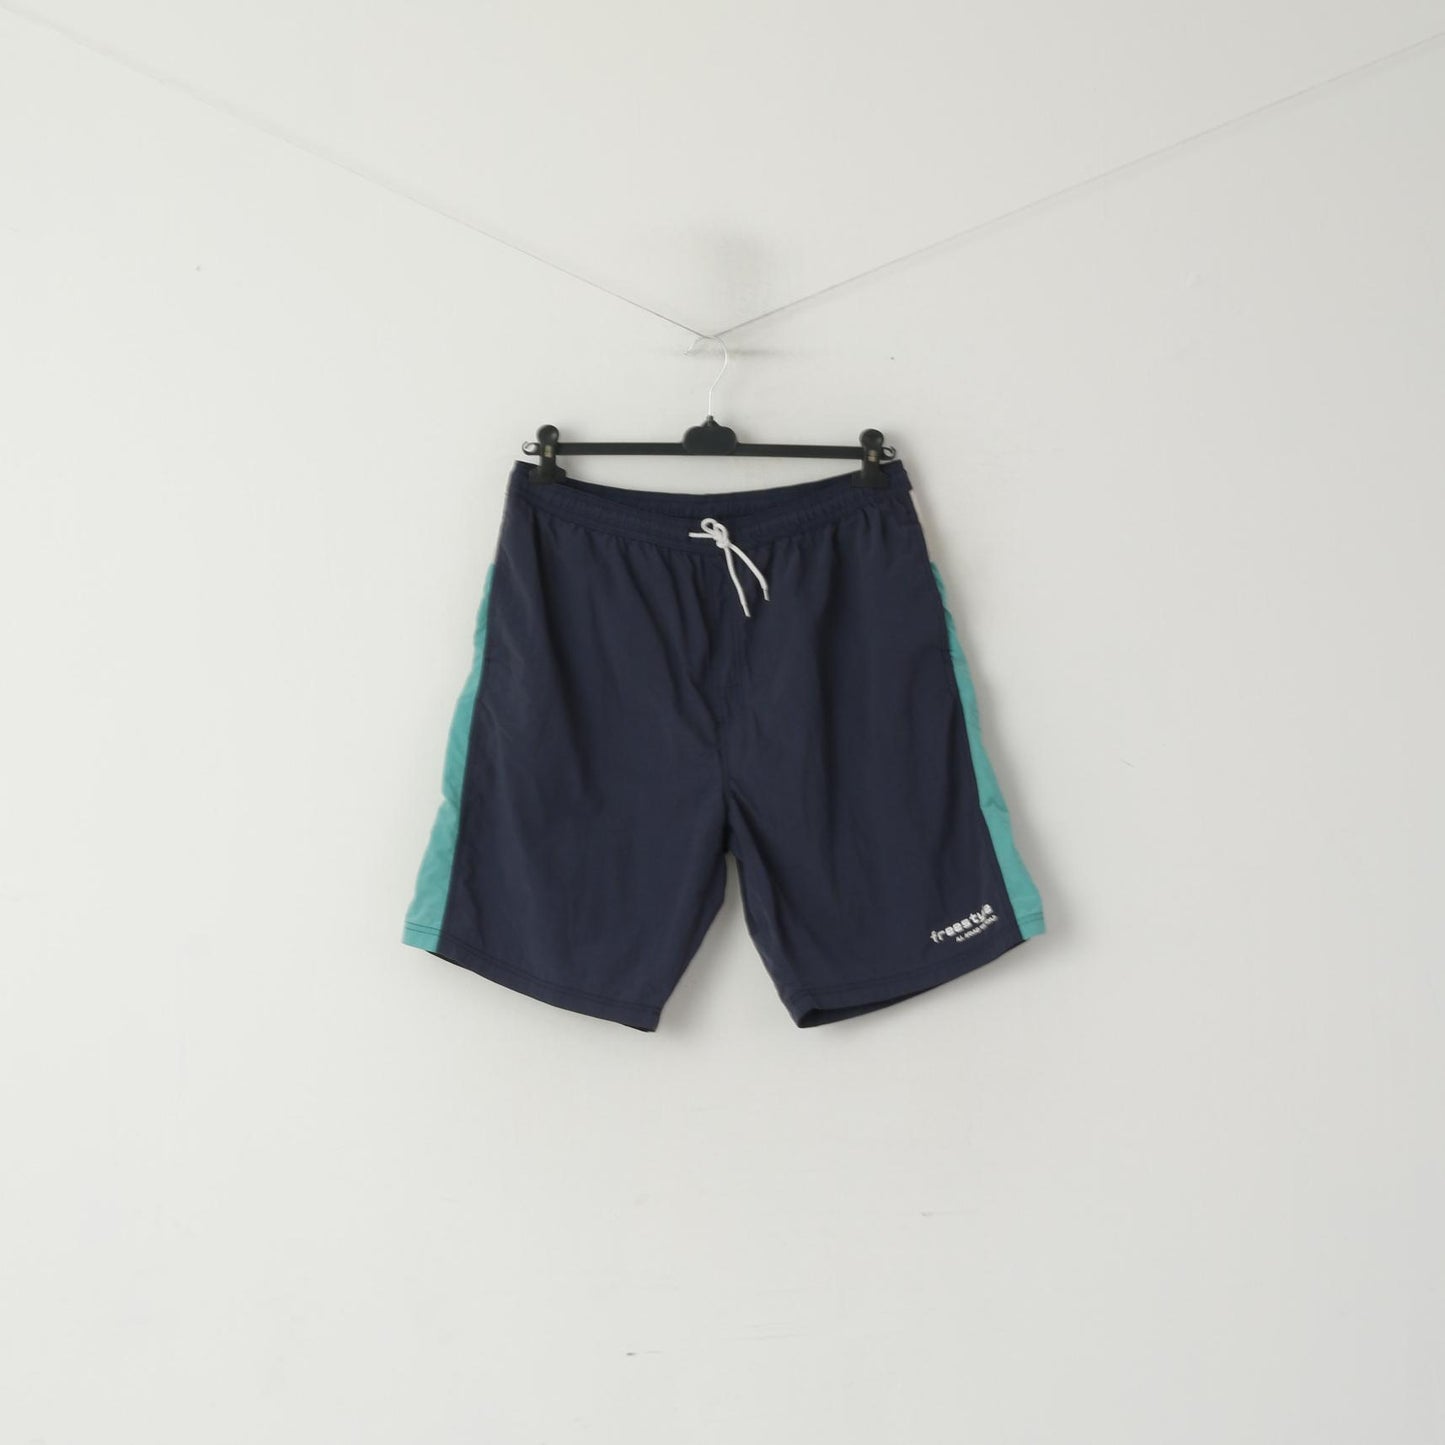 Enrico Rosi Hommes 56 XL Shorts Bleu Maillots De Bain Maille Doublé Été Freestyle